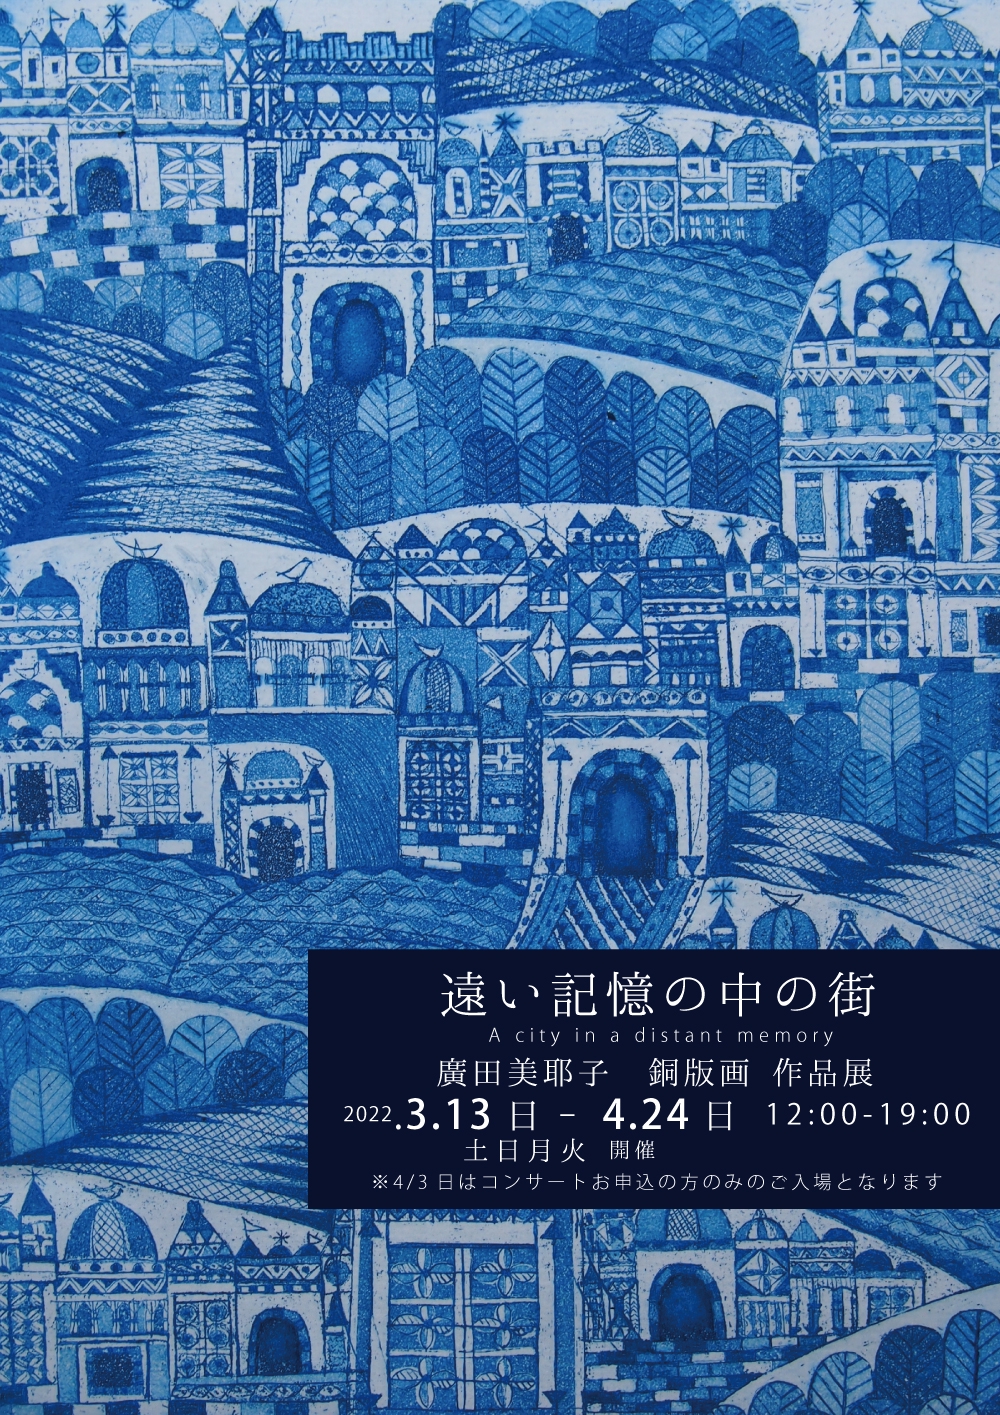 3/13日-4/24日 遠い記憶の中の街 廣田美耶子 銅版画 作品展 | gallery ...